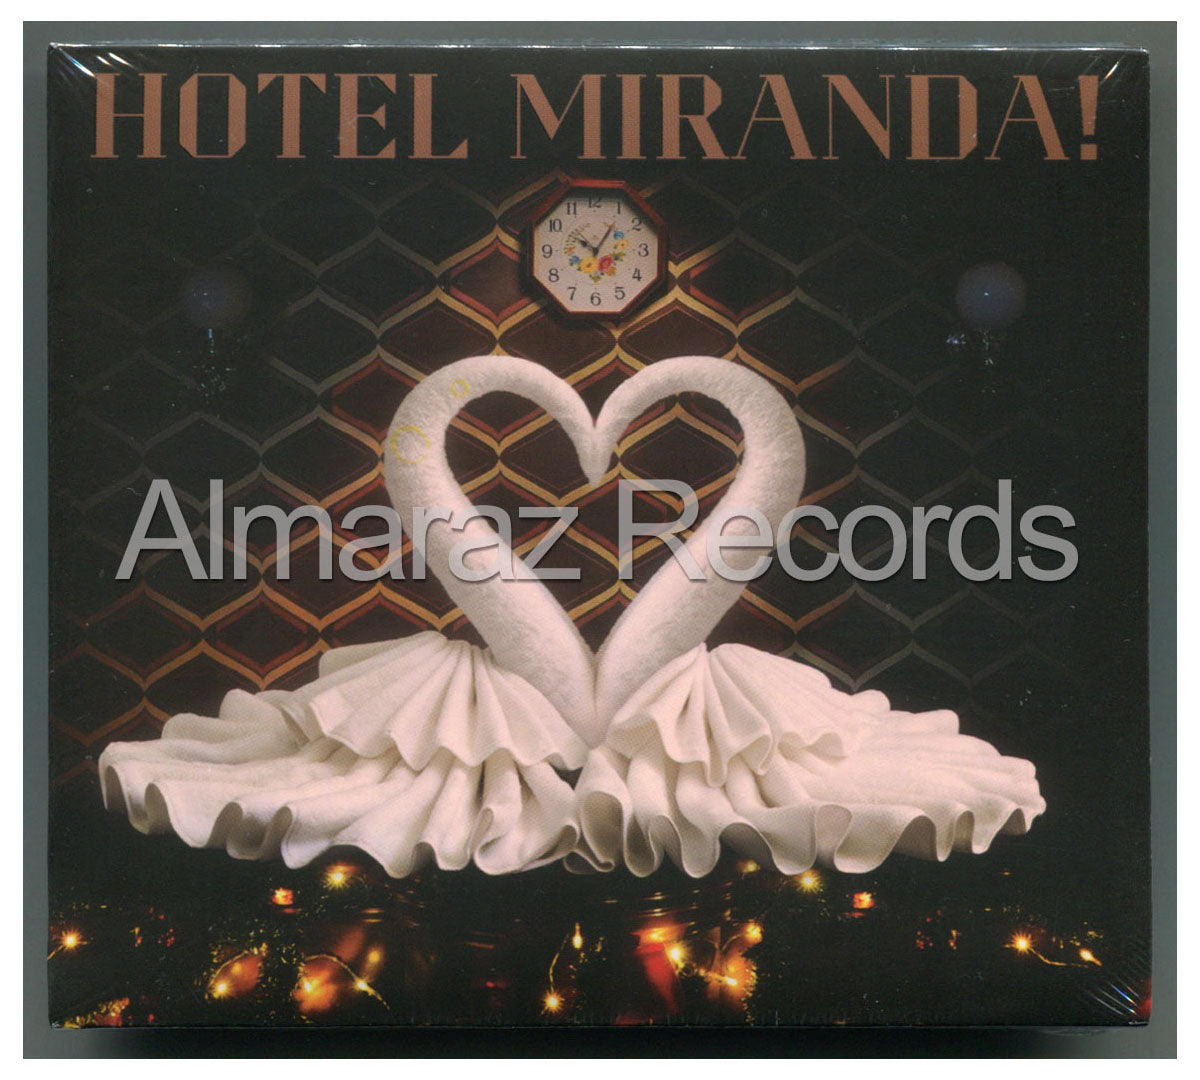 Miranda! Hotel Miranda! CD